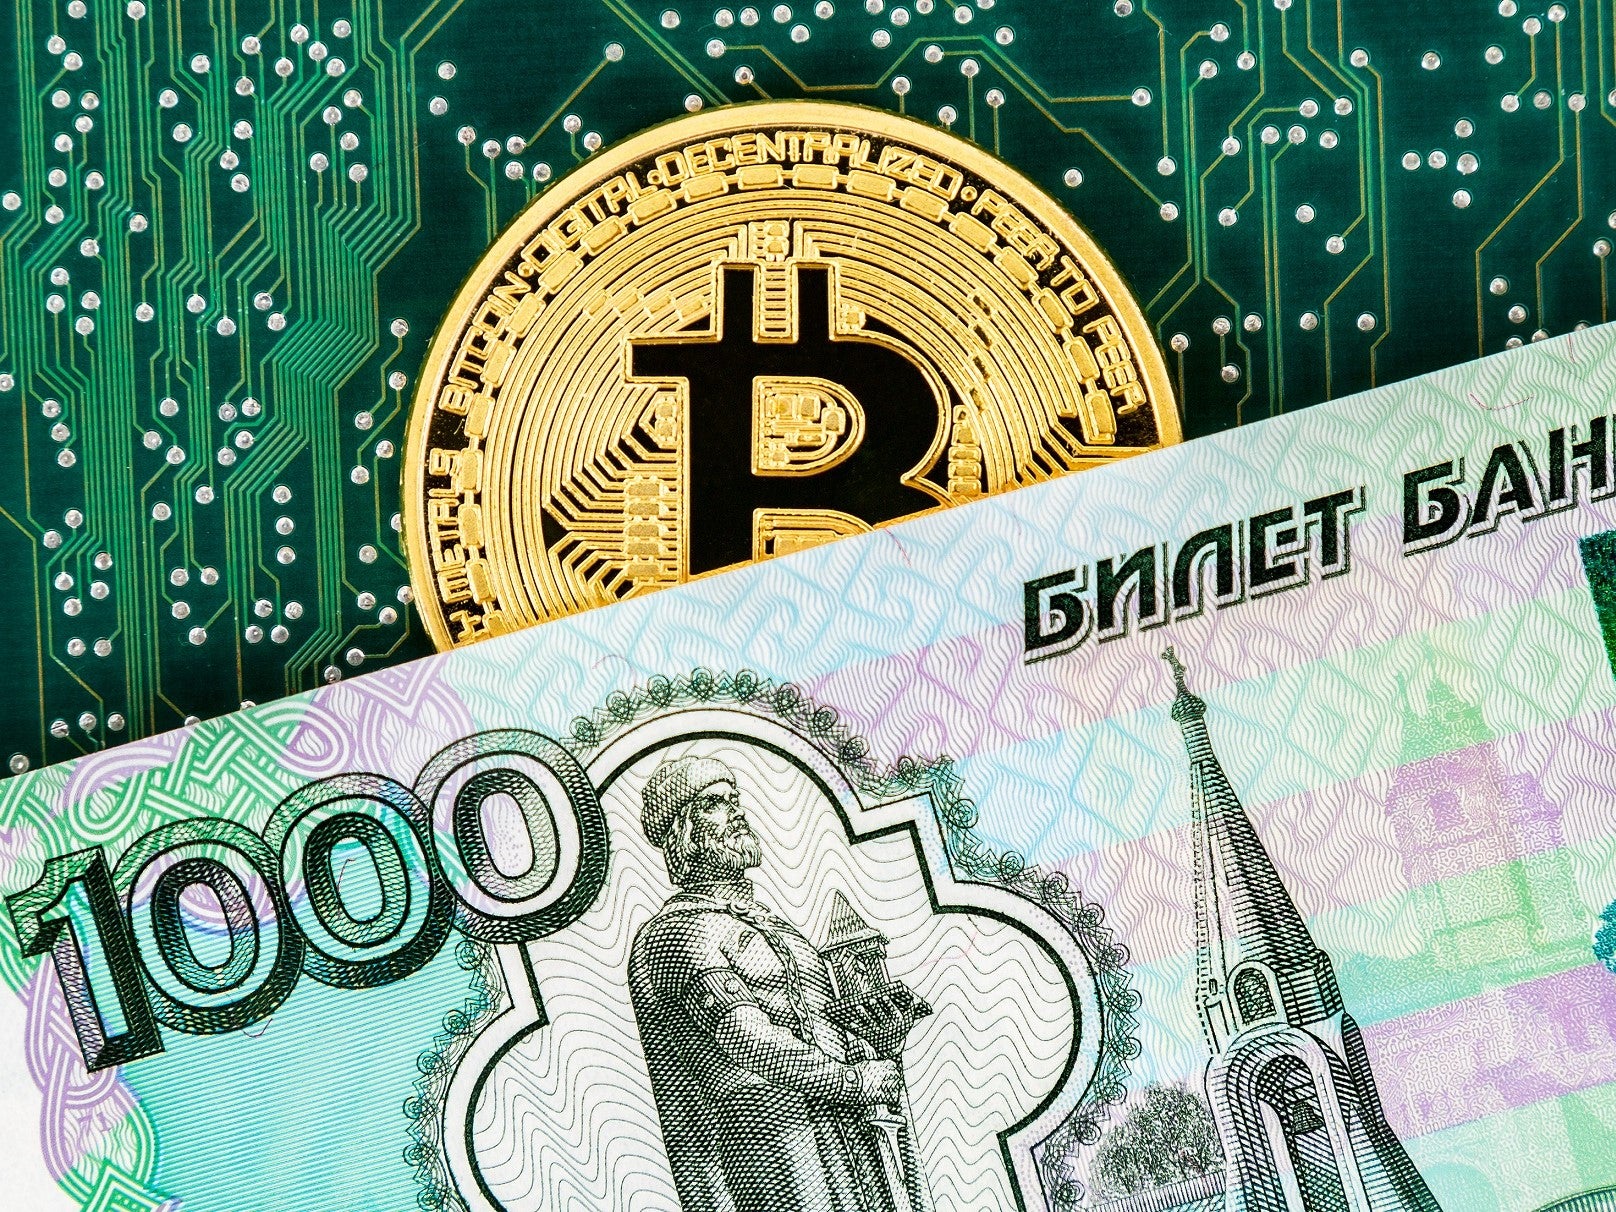 La capitalización de mercado del bitcoin superó al rublo ruso el 28 de febrero de 2022, luego de las severas sanciones económicas impuestas por la invasión rusa en Ucrania